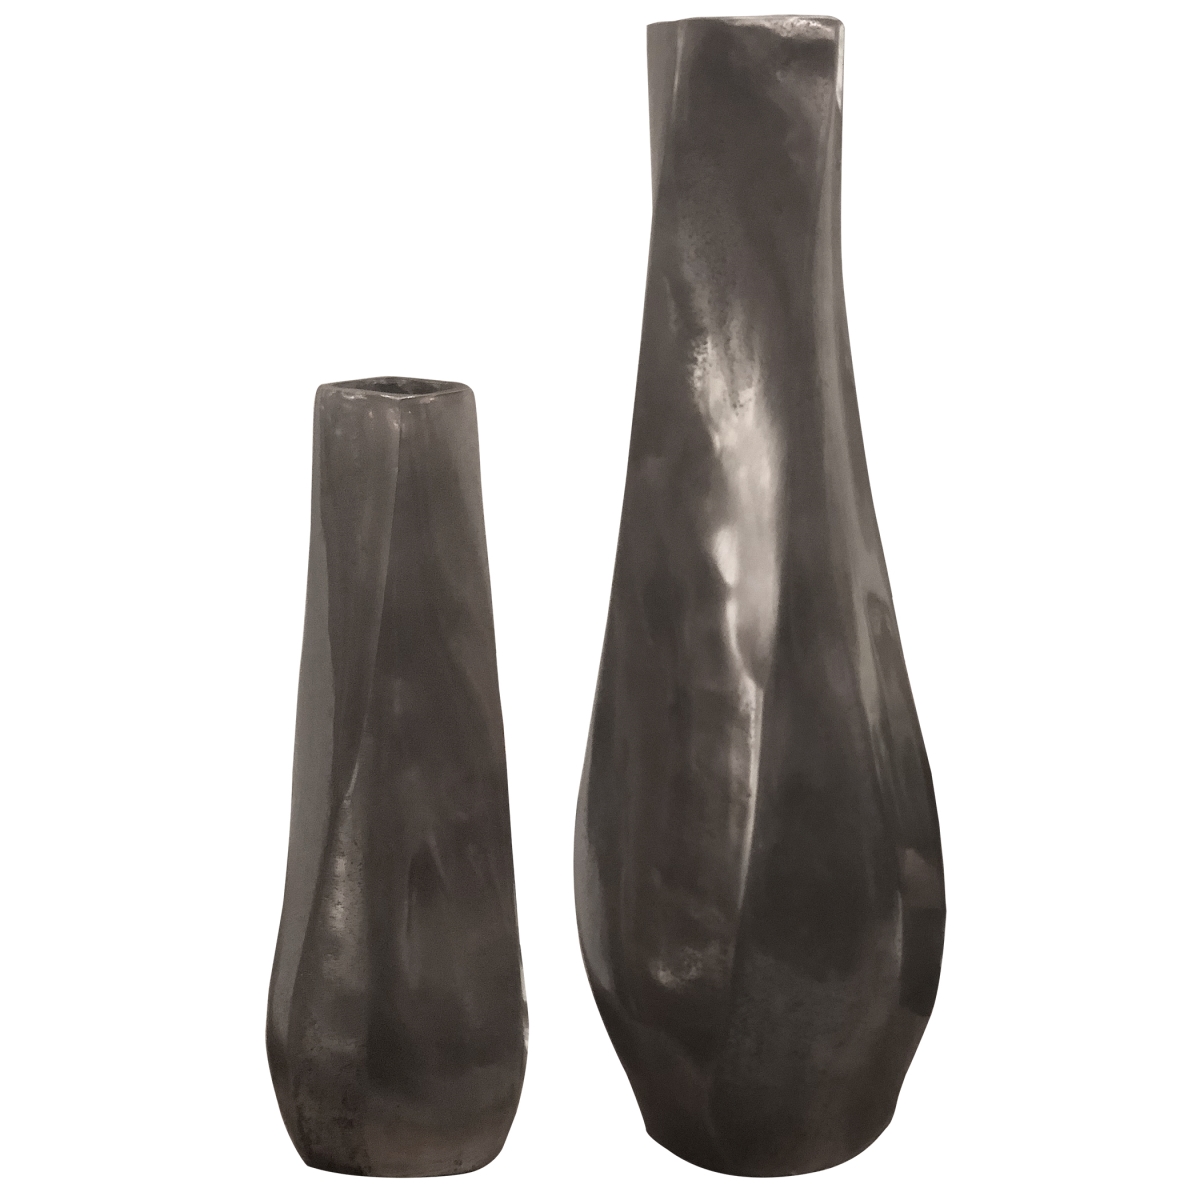 Picture of 212 Main 18967 Noa Dark Nickel Vases - Set of 2